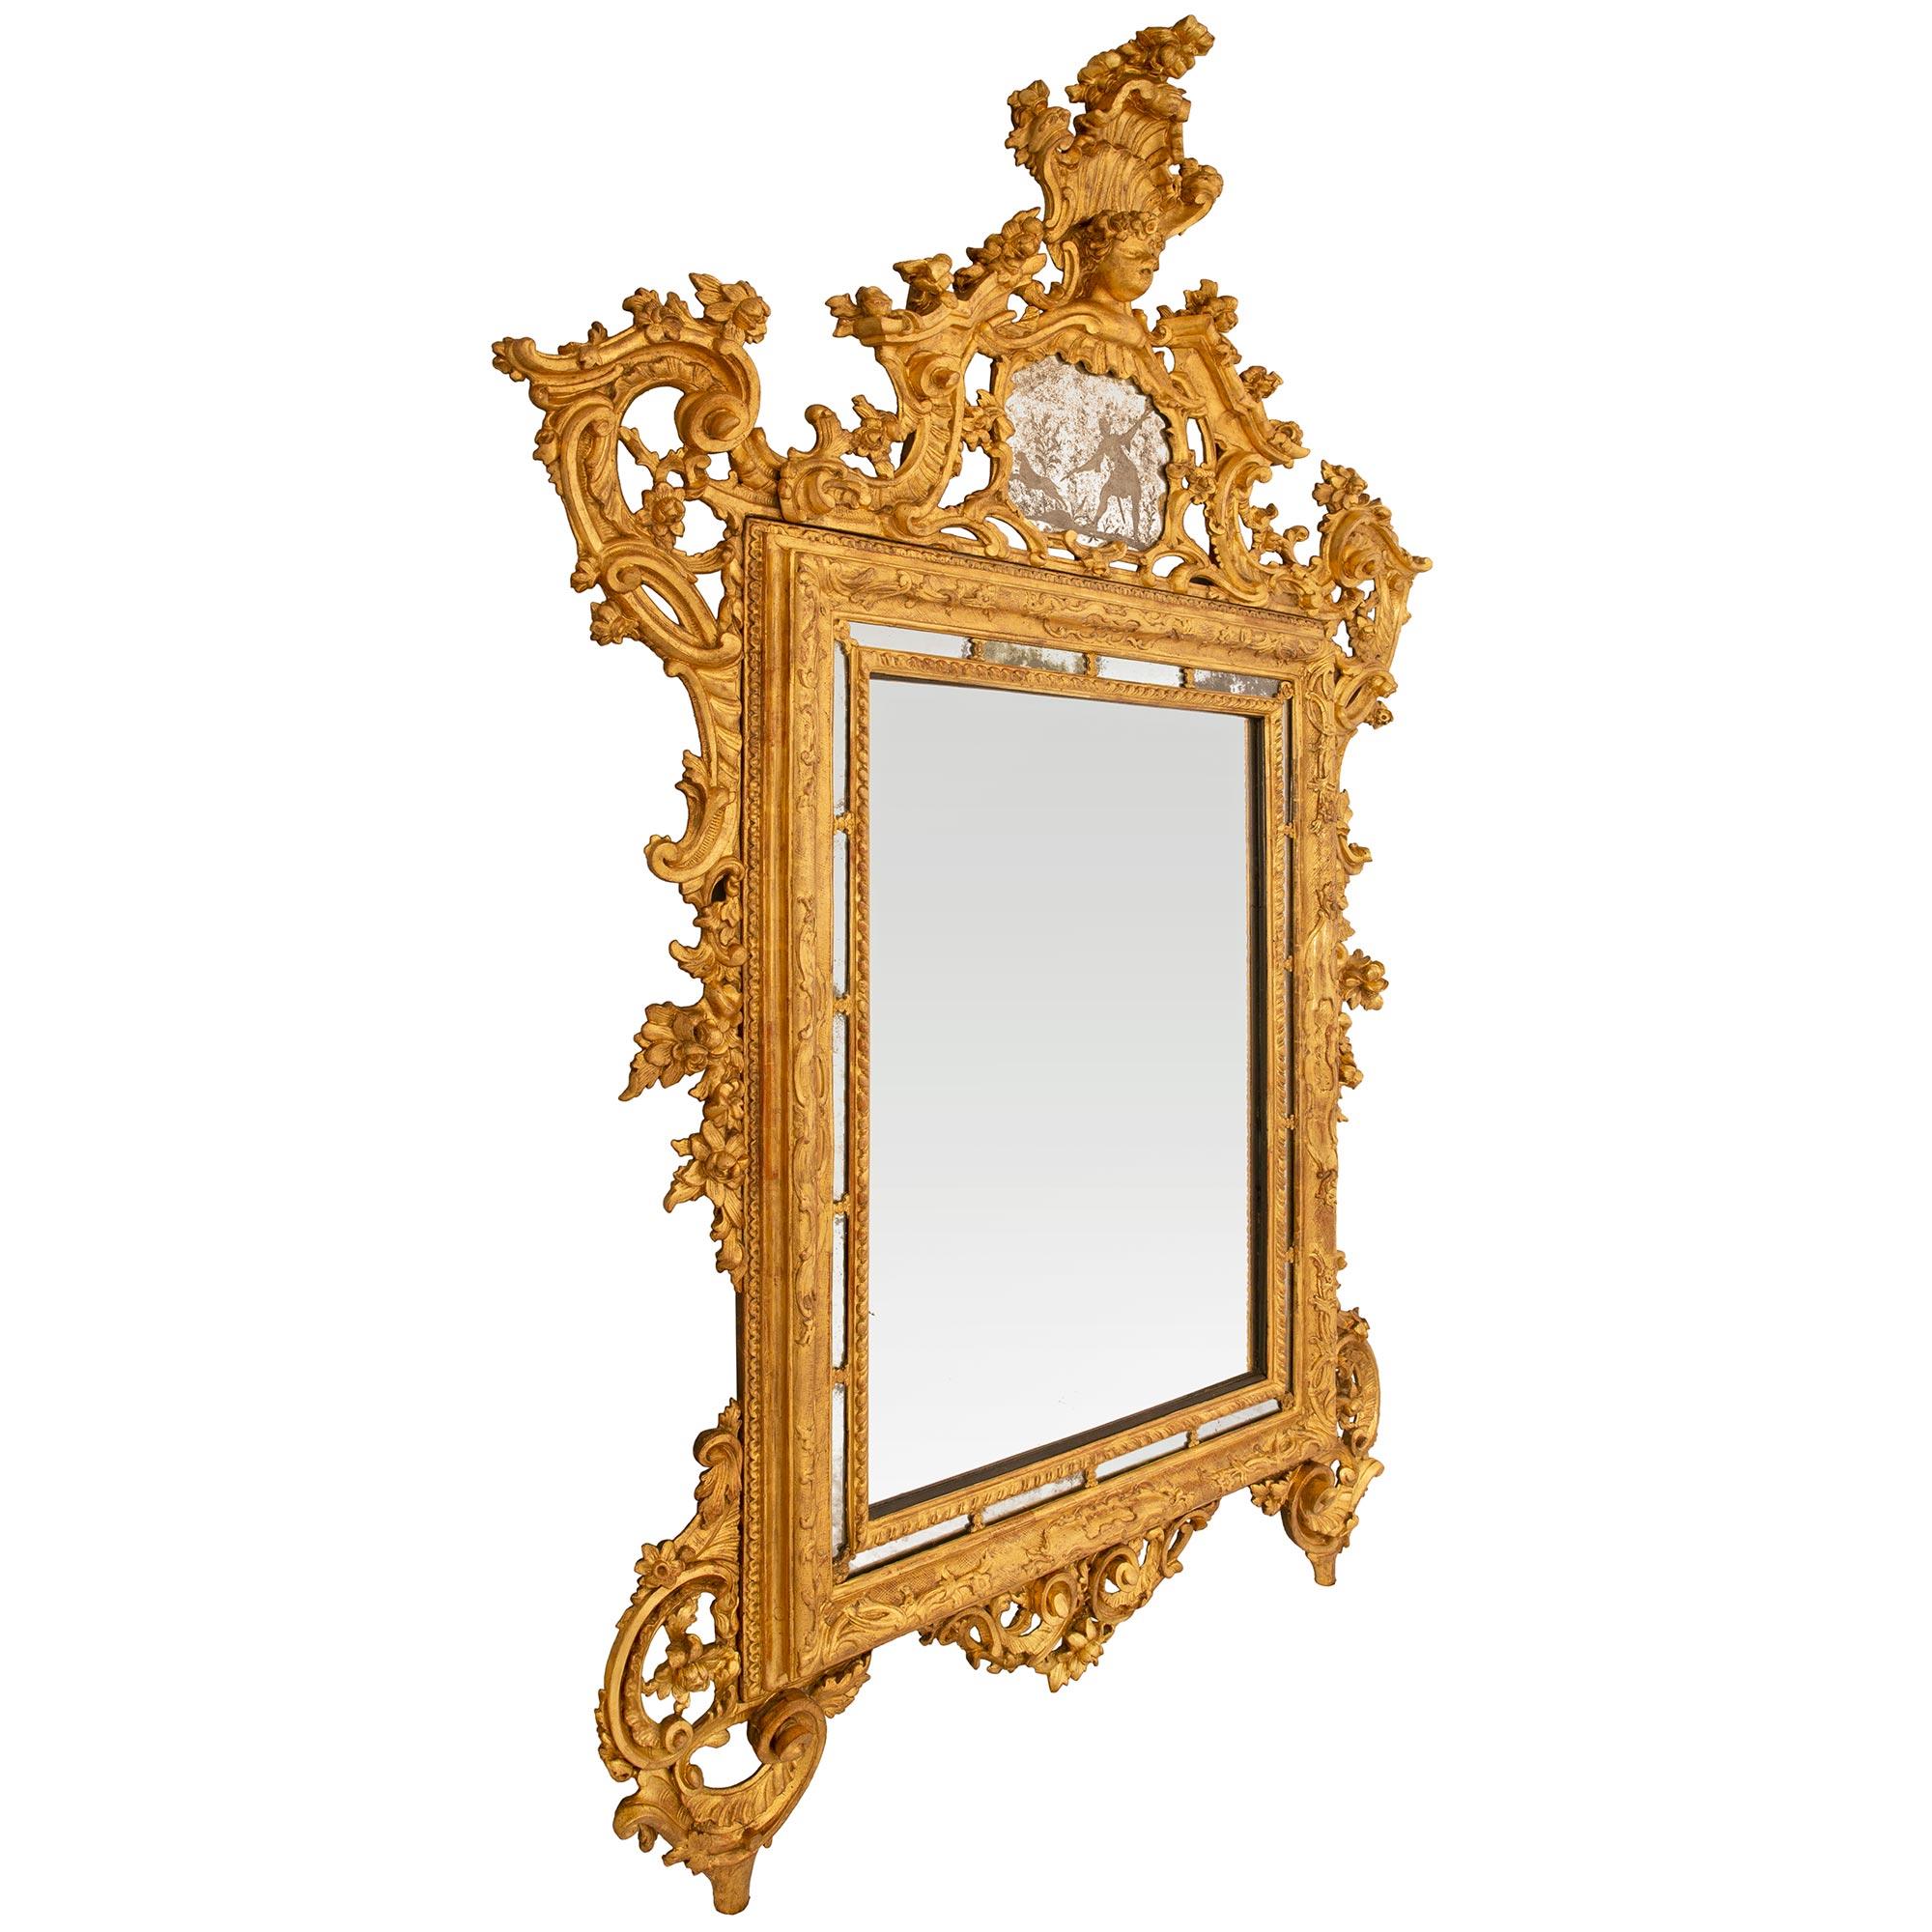 Miroir baroque italien du XVIIIe siècle en bois doré, de grande taille et de grande qualité, provenant de la collection de Hughes. Cet exquis miroir de sol repose sur deux pieds joliment enroulés, attachés à des décorations percées très finement